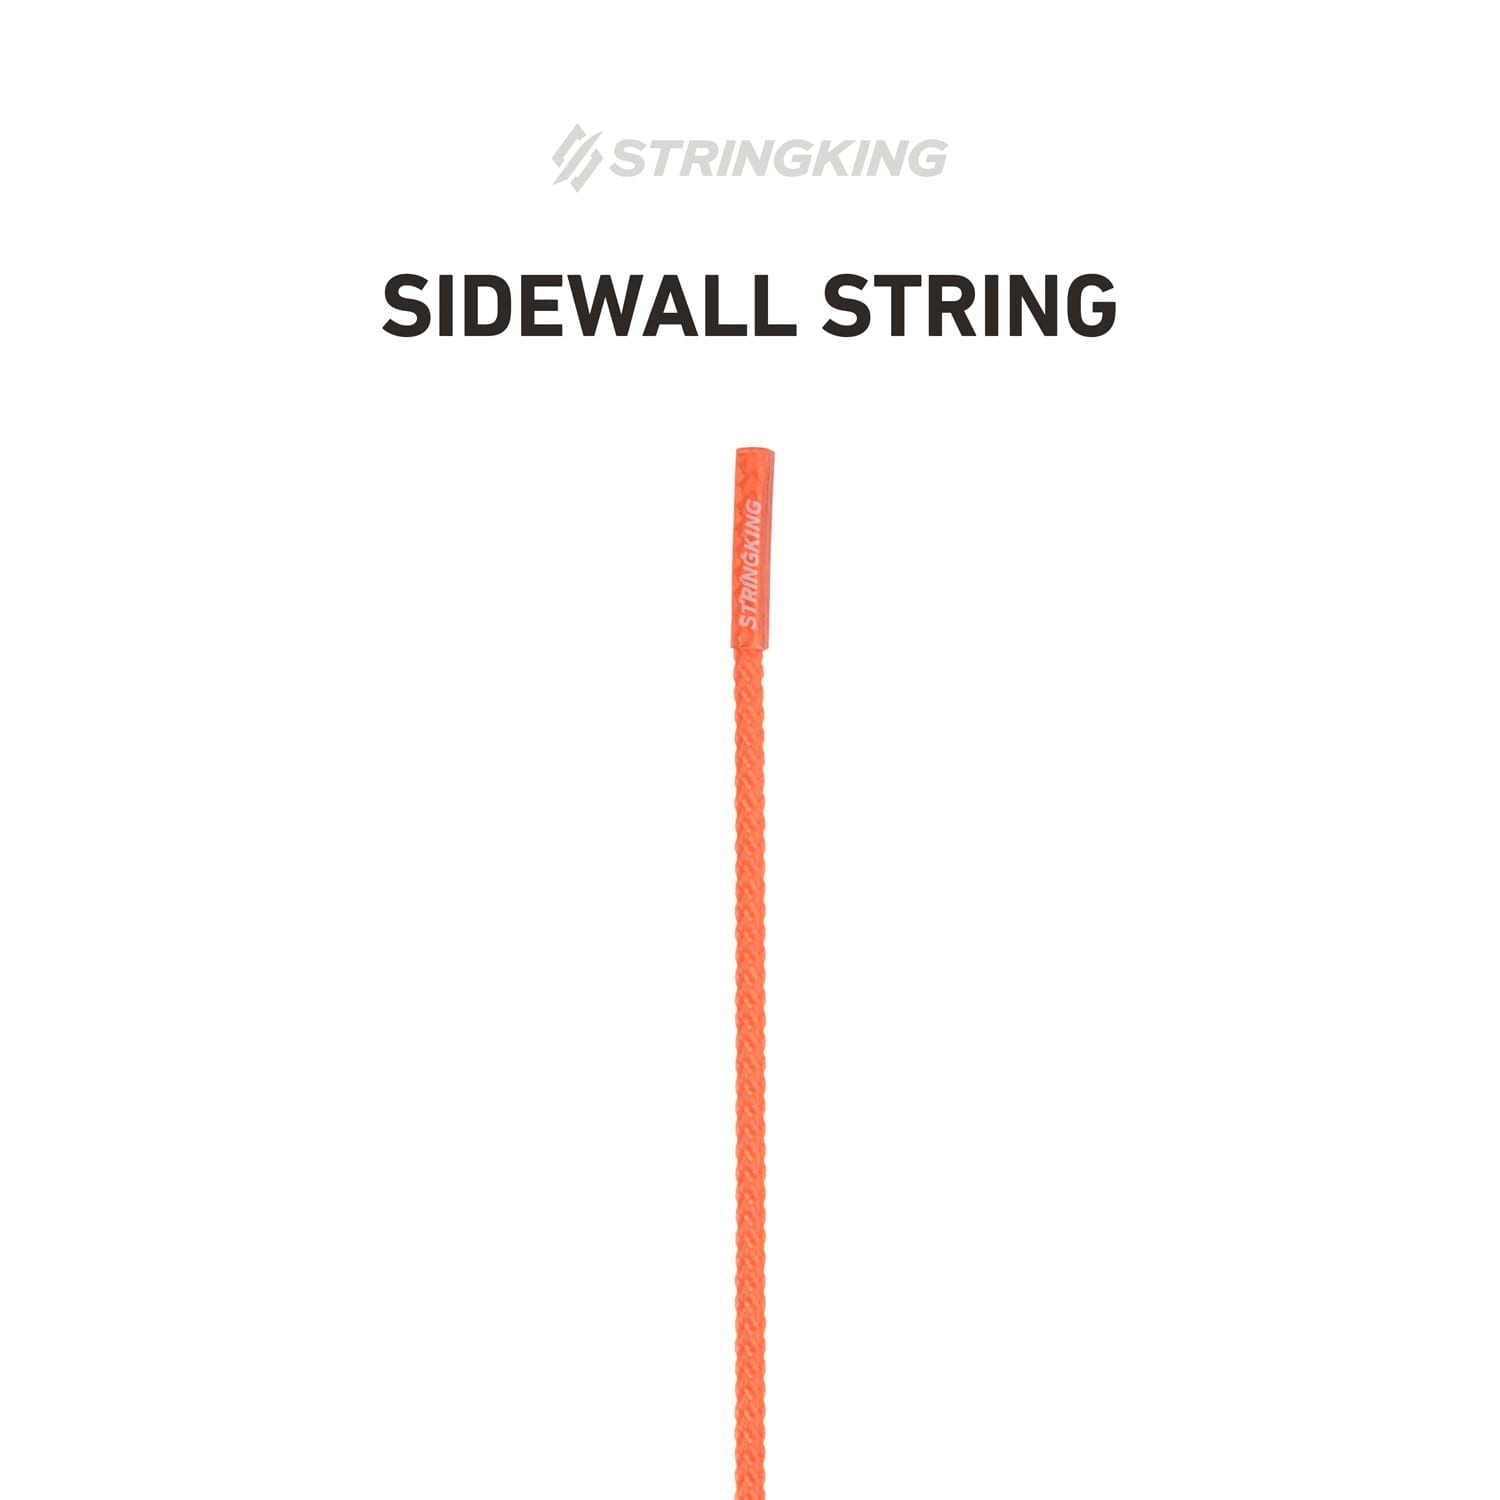 sidewall-string-specialty-retailers-orange.jpg